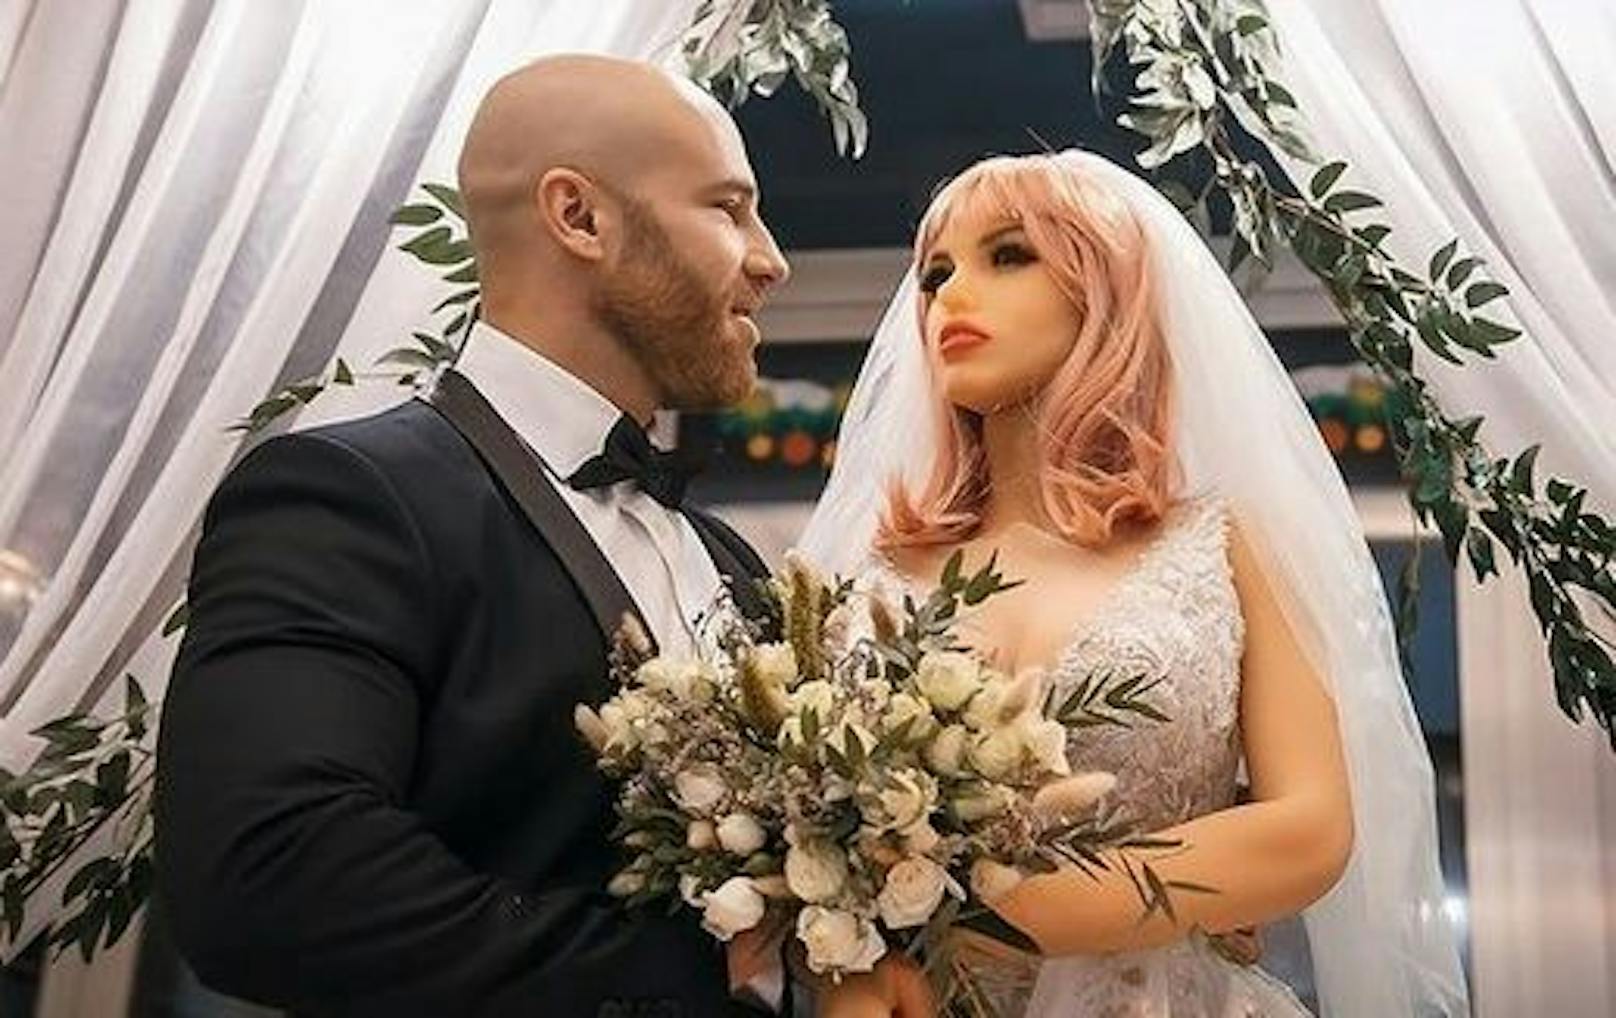 Skurril: Bodybuilder heiratet seine Sex-Puppe